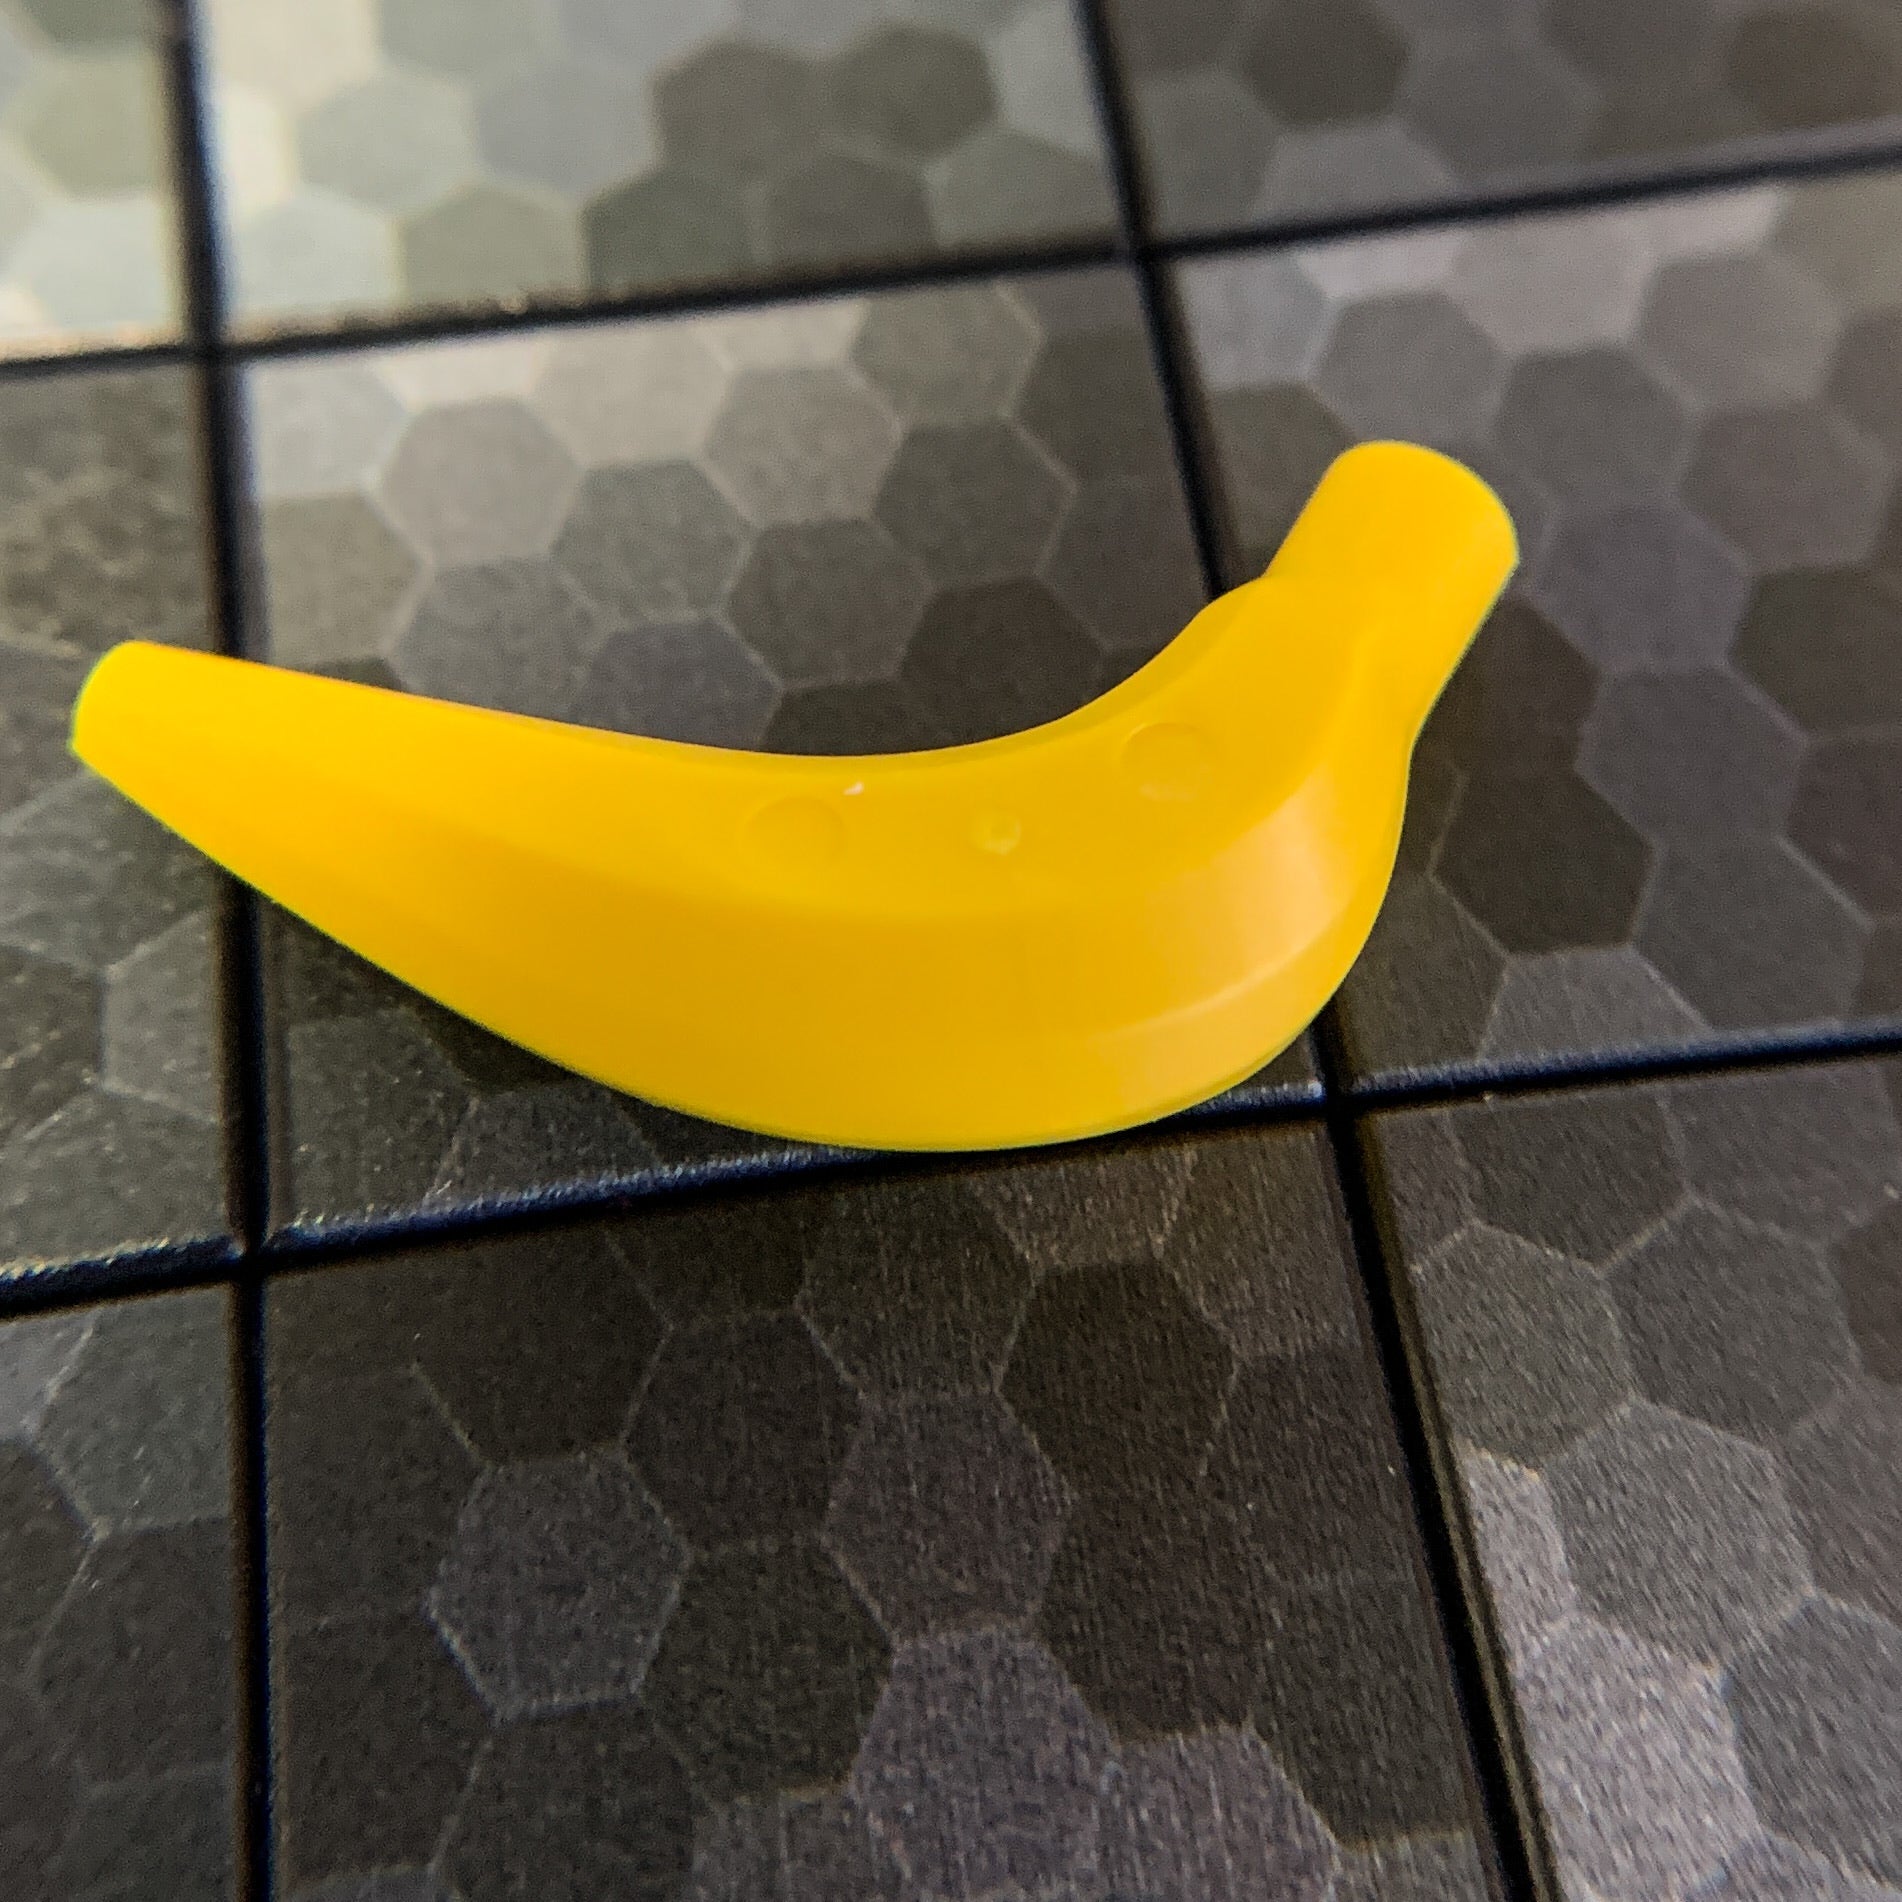 Banana - Official LEGO® Part